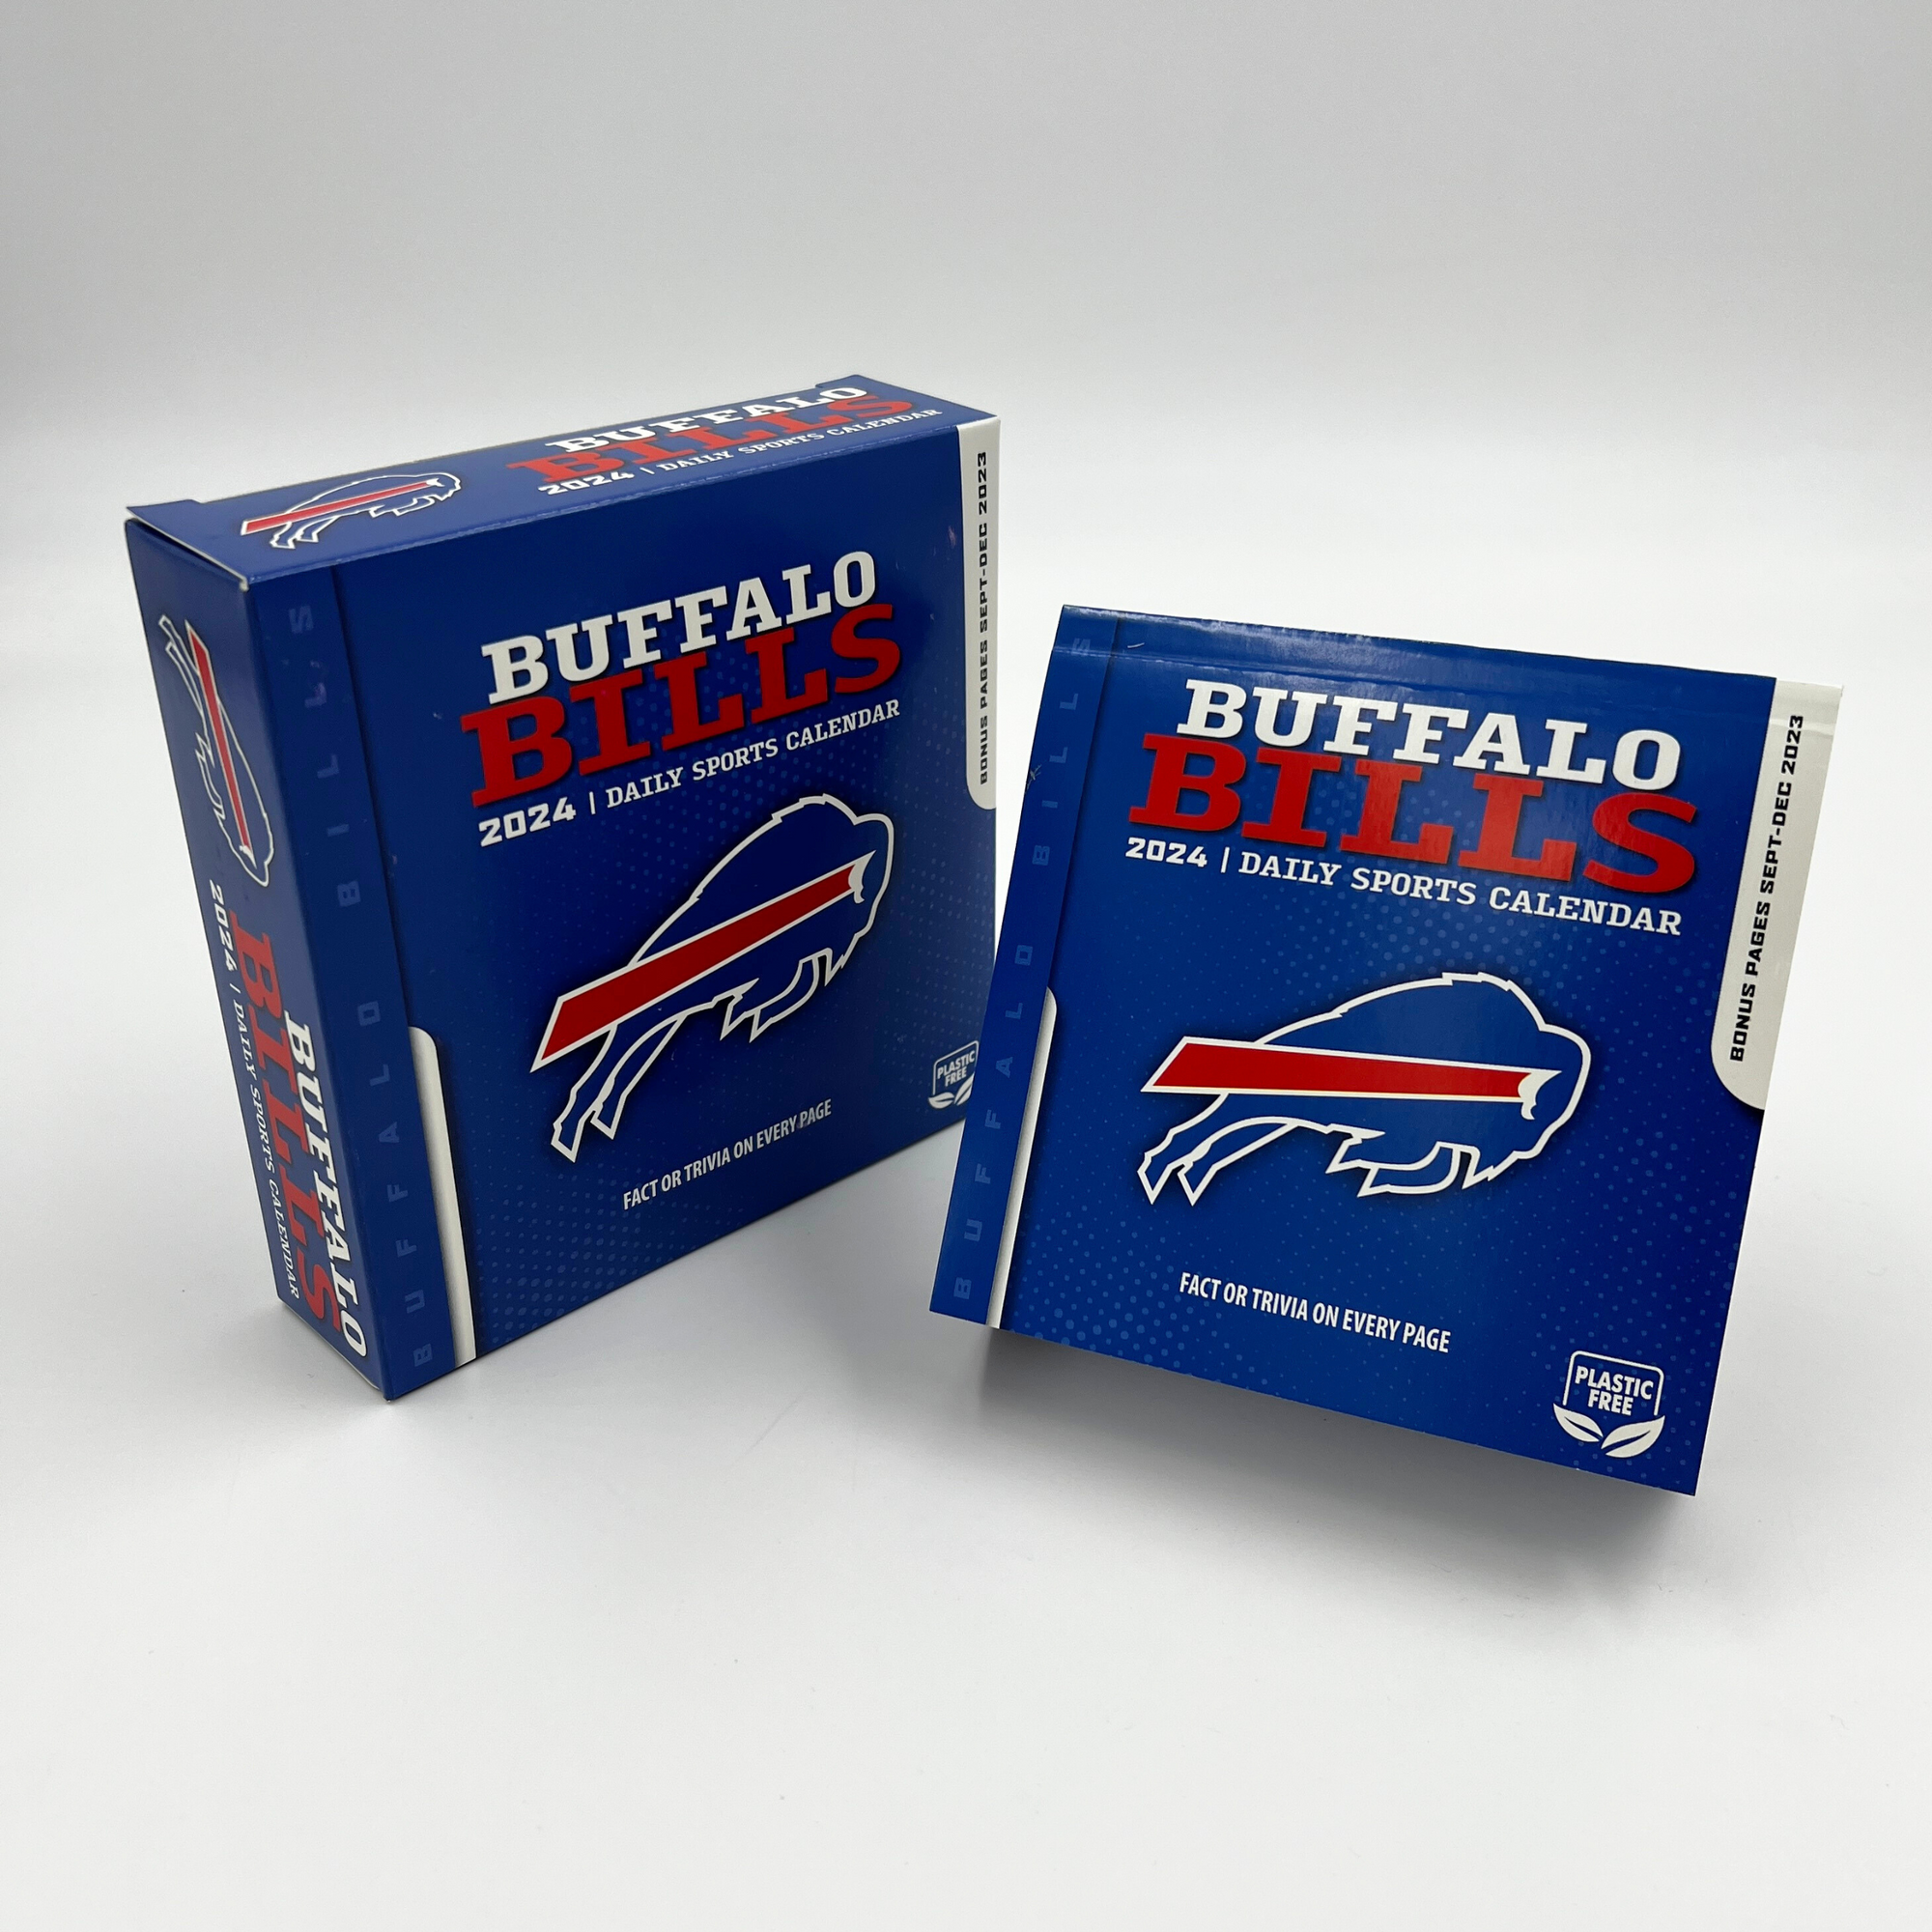 2024 Buffalo Bills Daily Sports Calendar